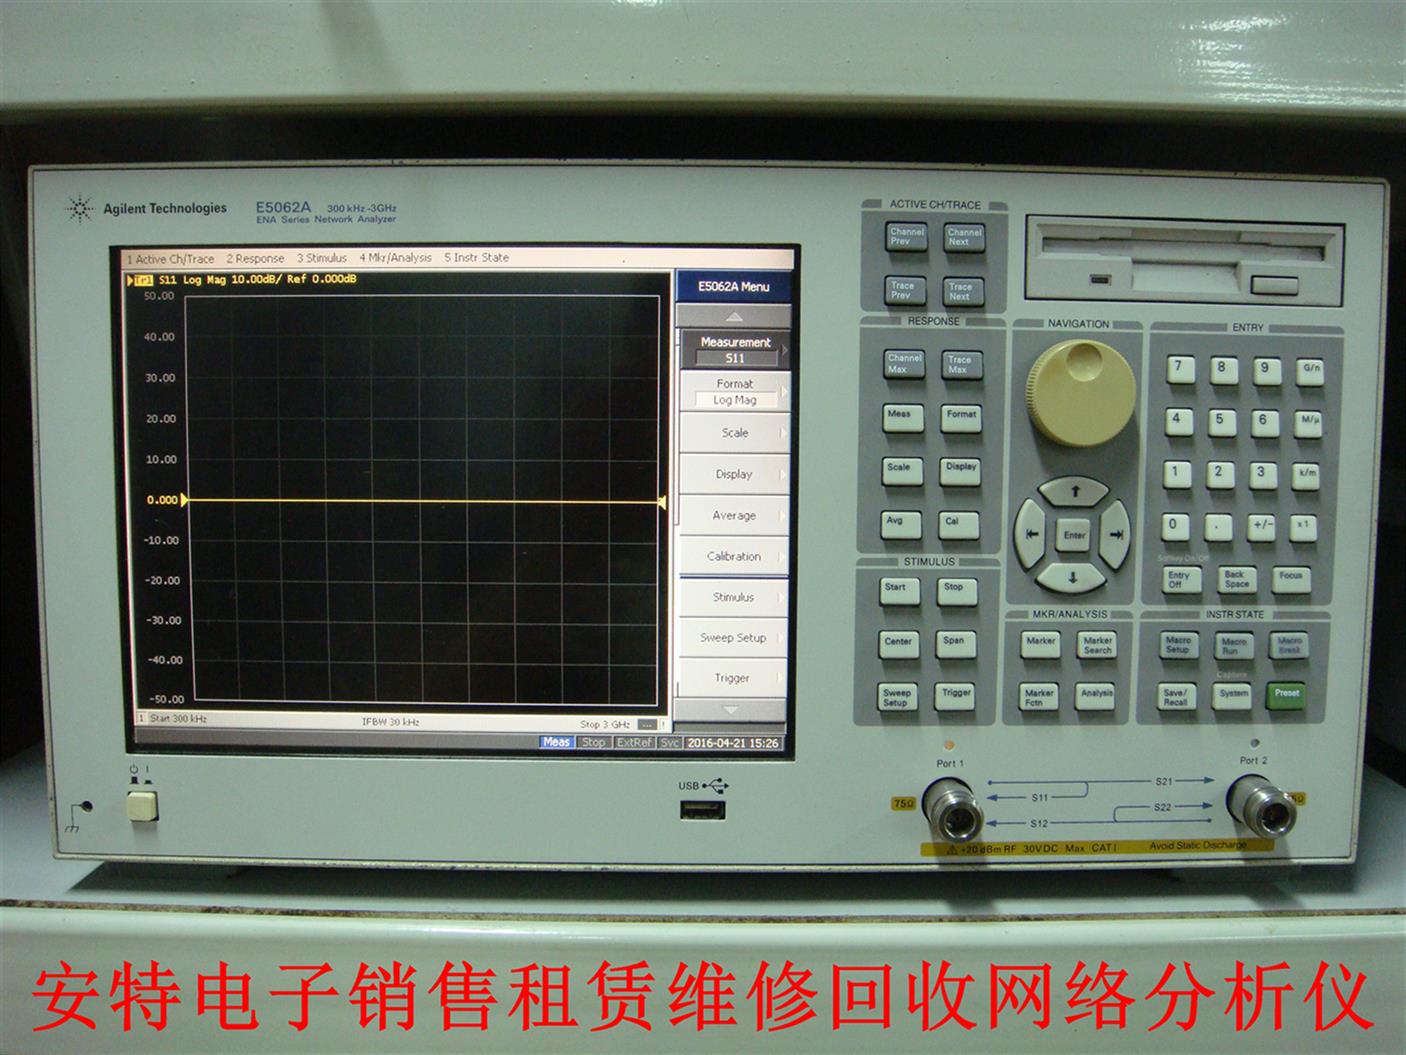 青島E5062A回收 5061B 質量保證 全國技術支持